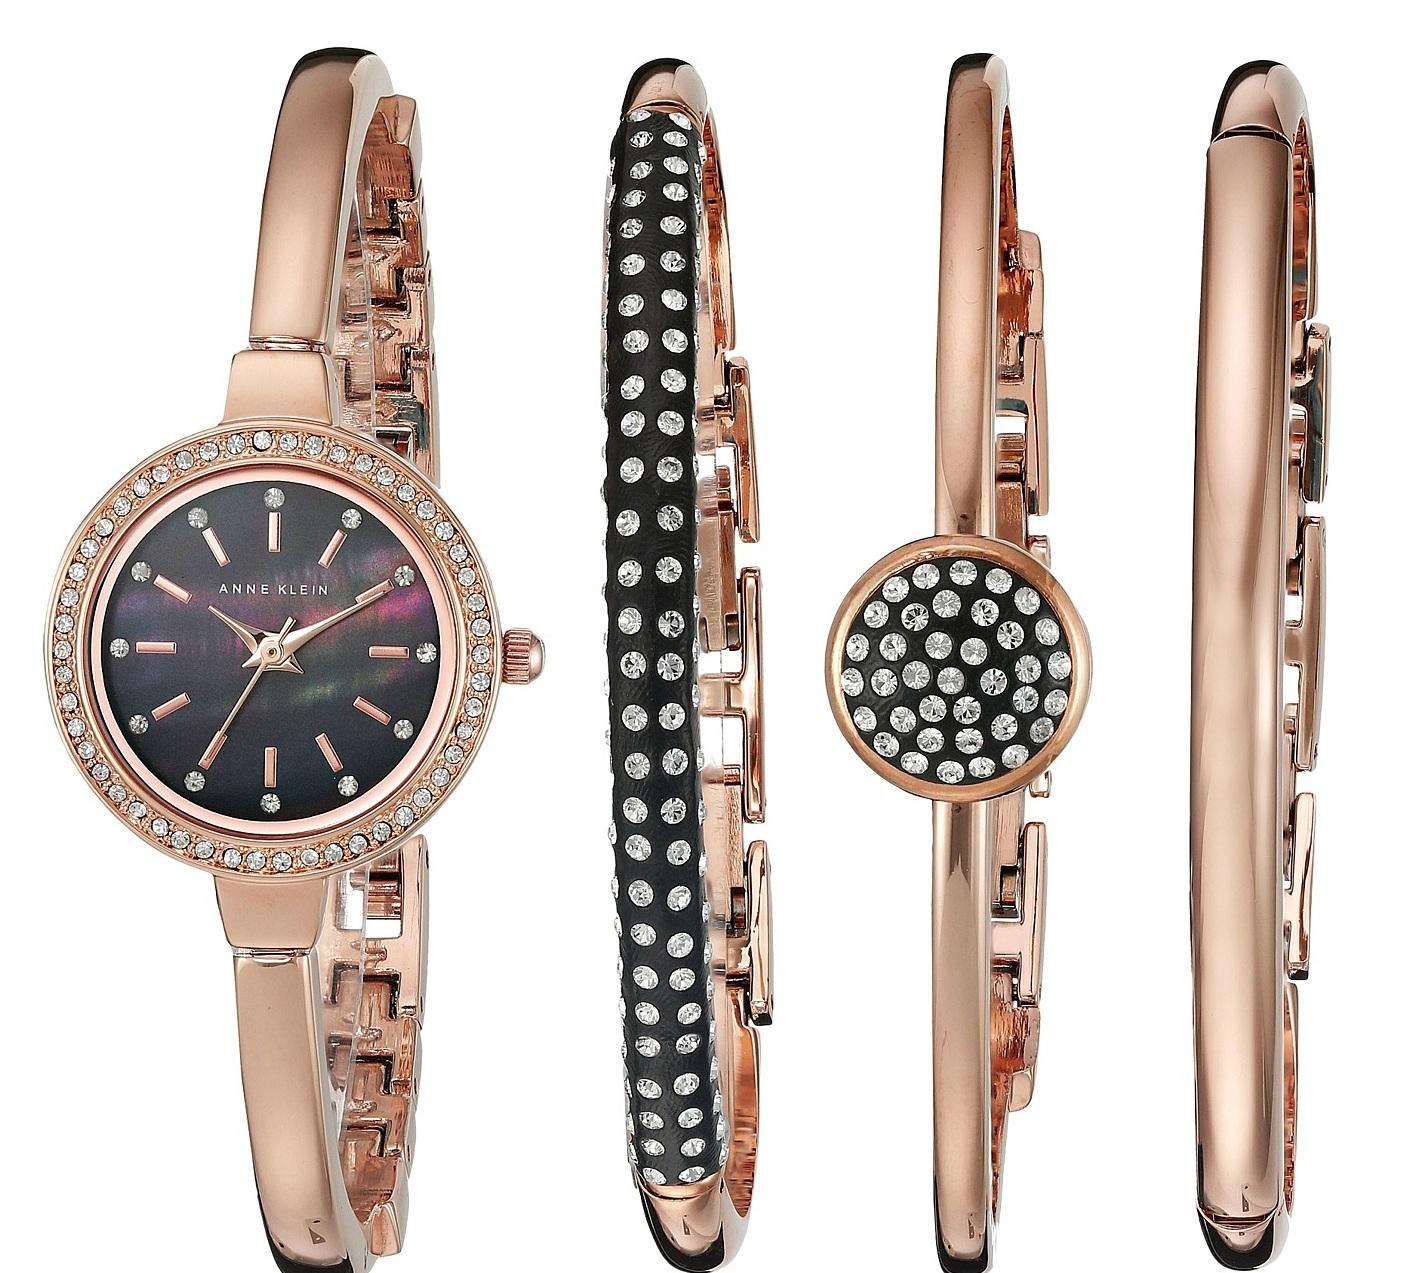 10 mẫu đồng hồ Anne Klein Nữ kèm lắc tay sang trọng đang được săn lùng v